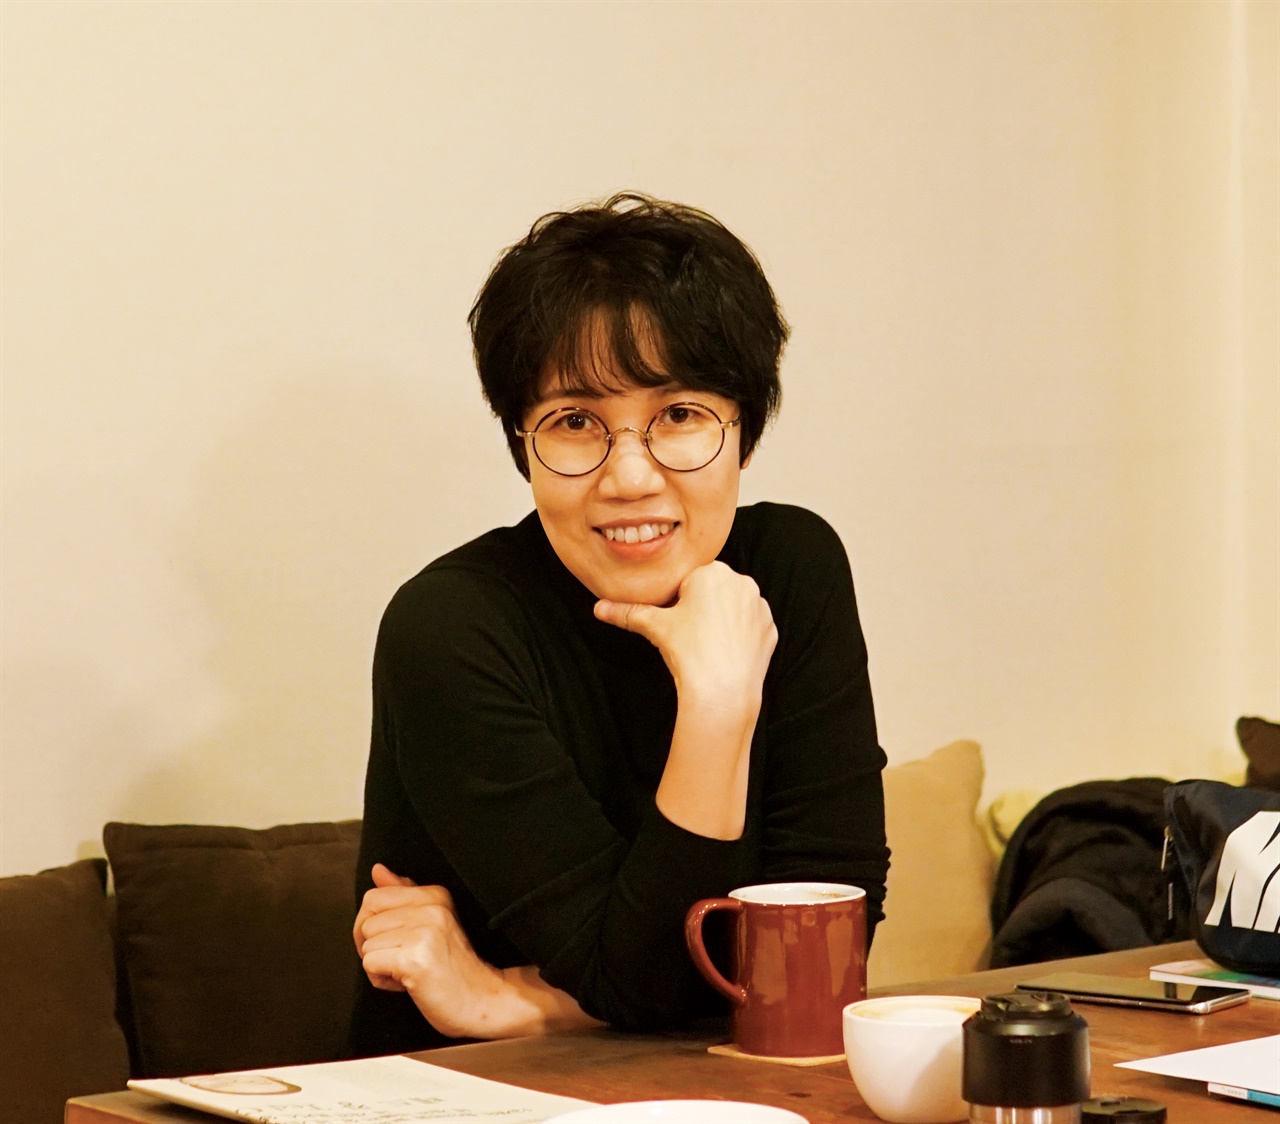 인터뷰에 응하고 있는 윤해연 작가